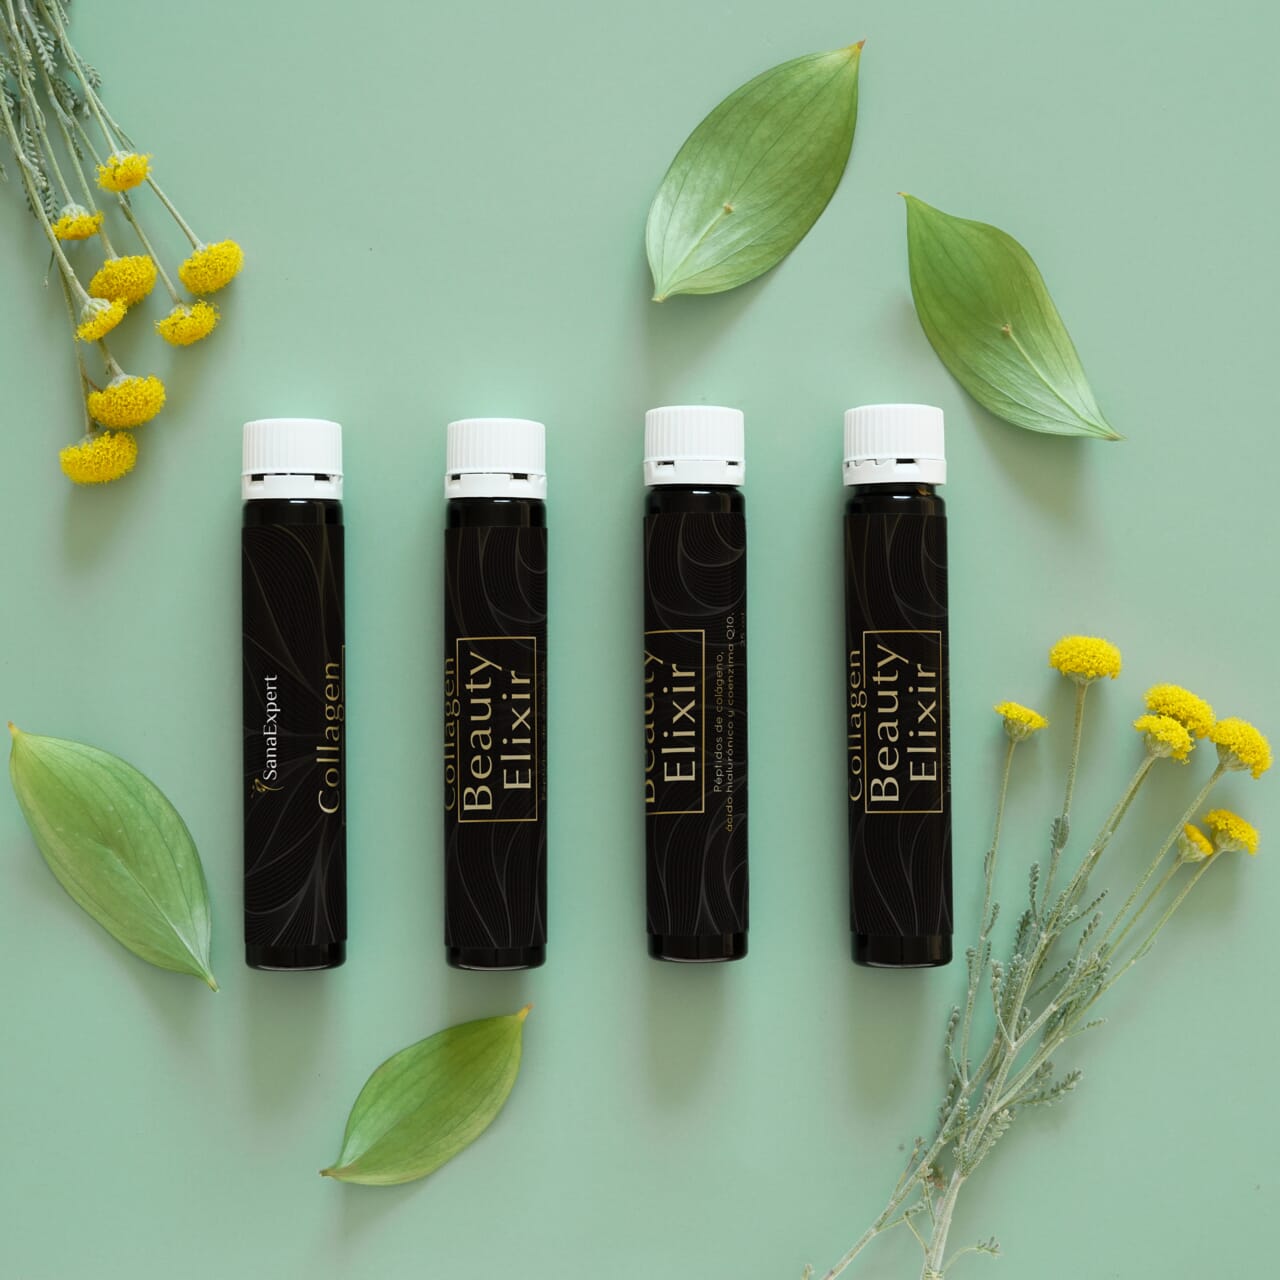 Vier Flaschen SanaExpert Collagen Beauty Elixir, kunstvoll mit grünen Blättern und gelben Blüten auf mintgrünem Hintergrund arrangiert.